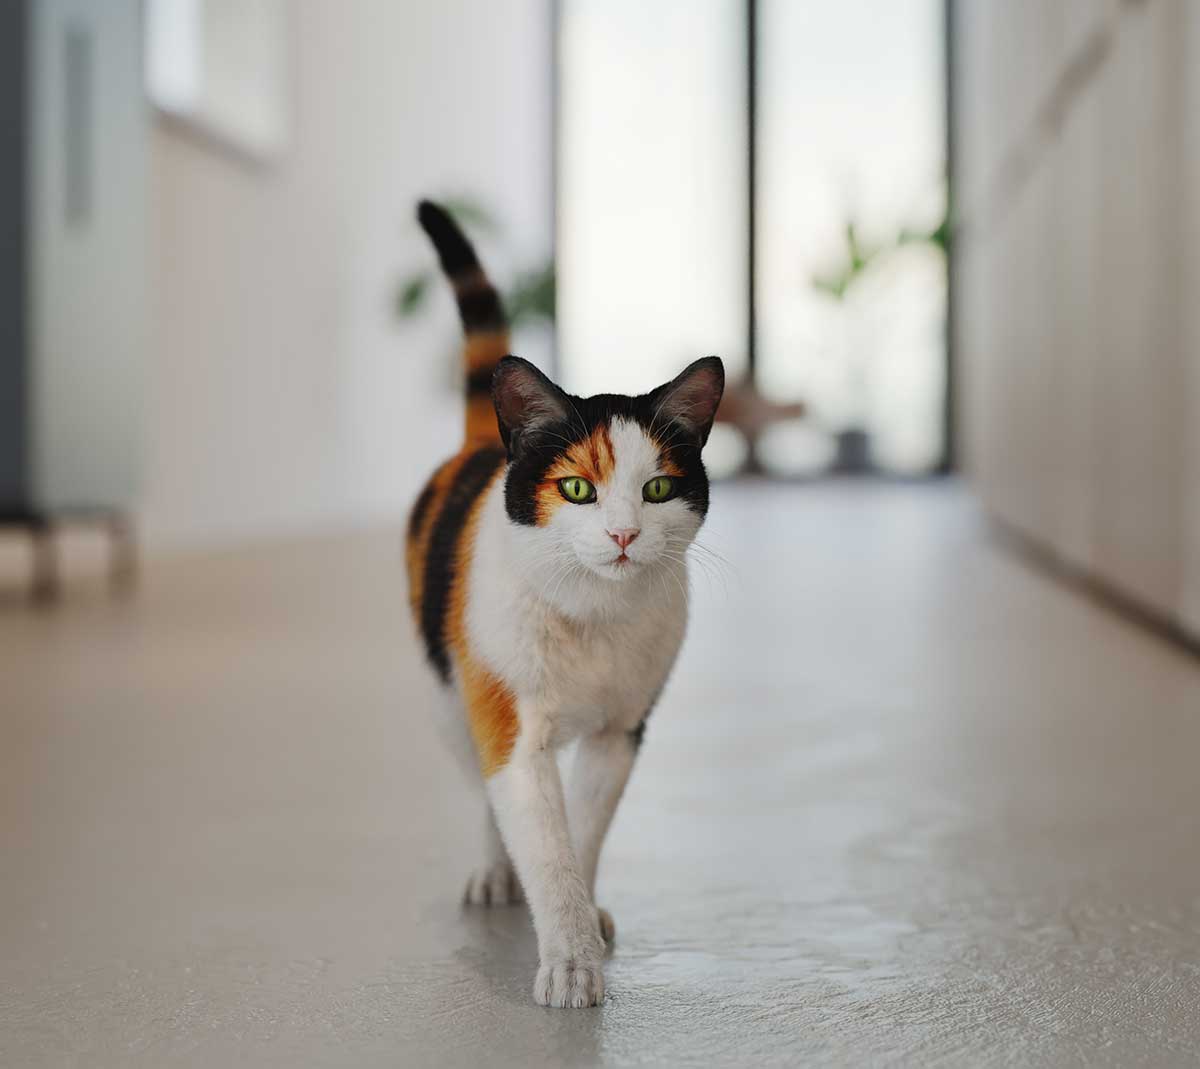 A cat walking towards you